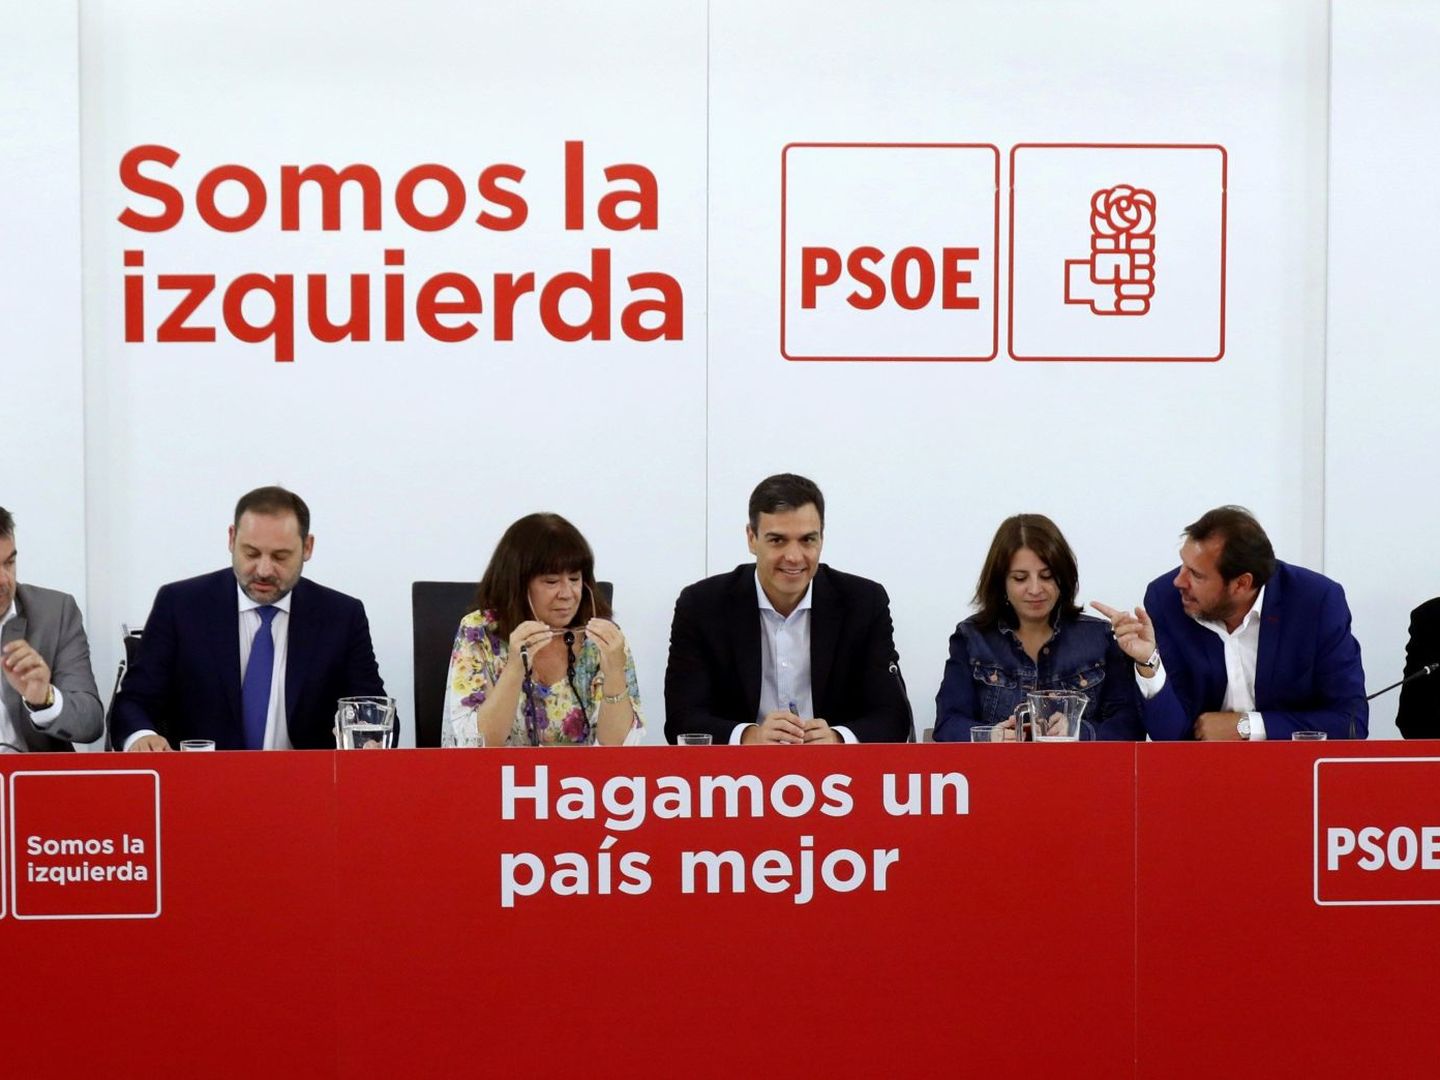 Historia del Partido Socialista Obrero Español